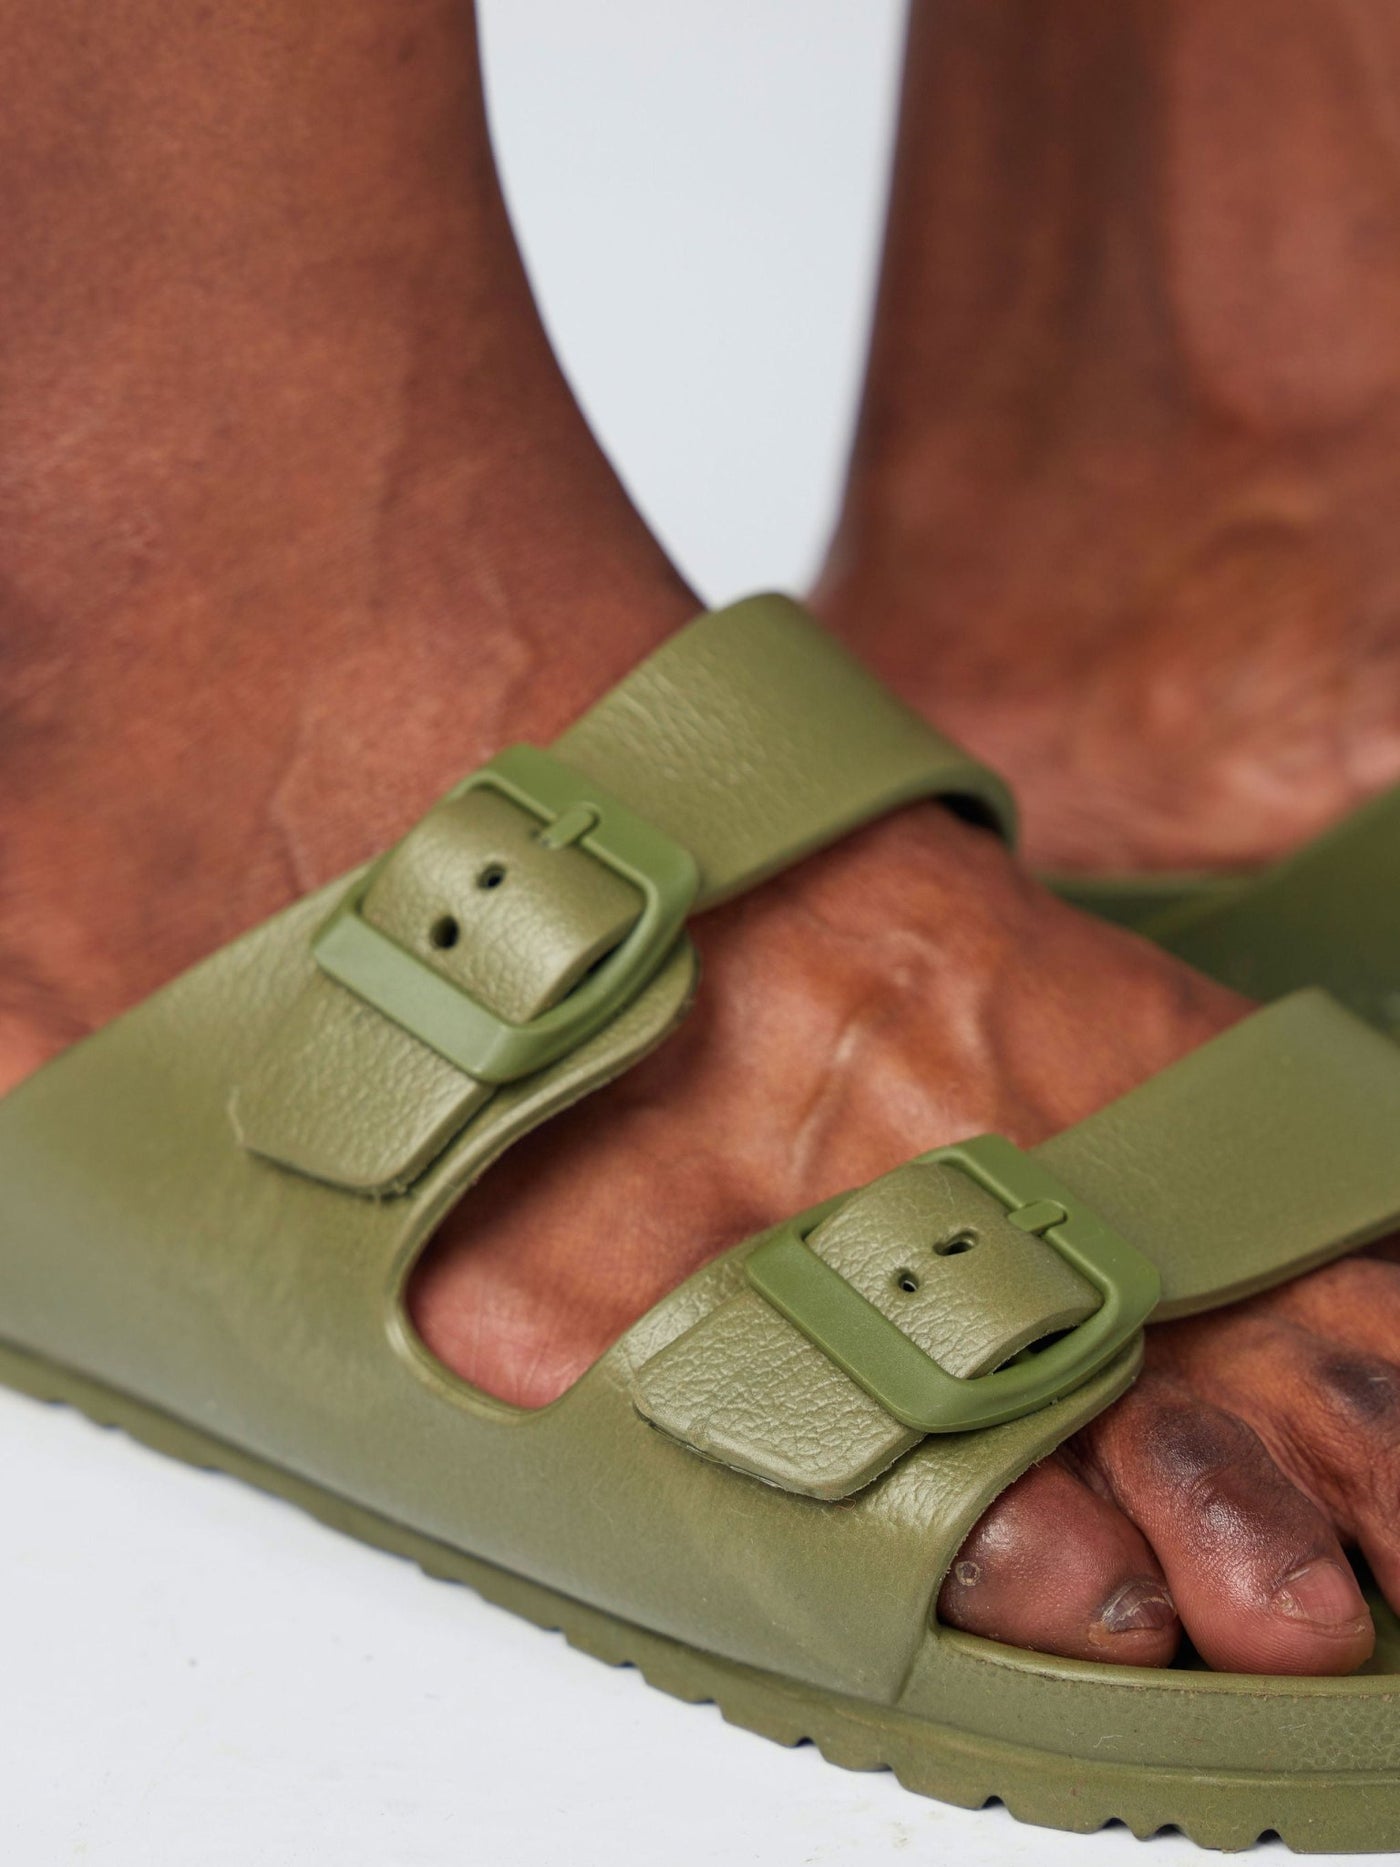 Ziatu Double Buckle Sandals - Green - Shopzetu